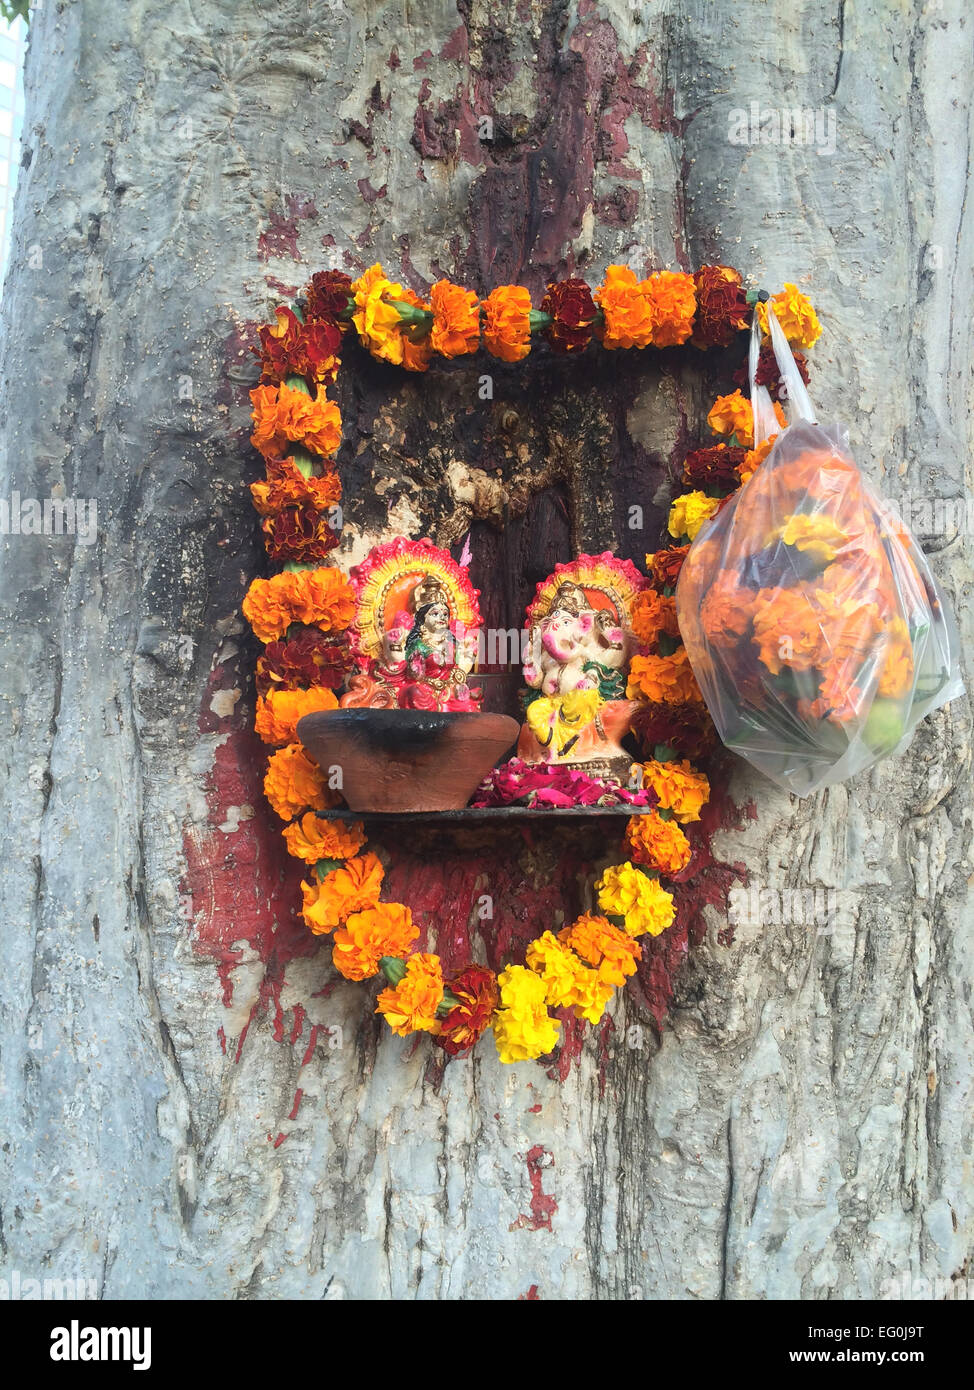 La India, Delhi, pequeña capilla hindú clavado al tronco de árbol Foto de stock